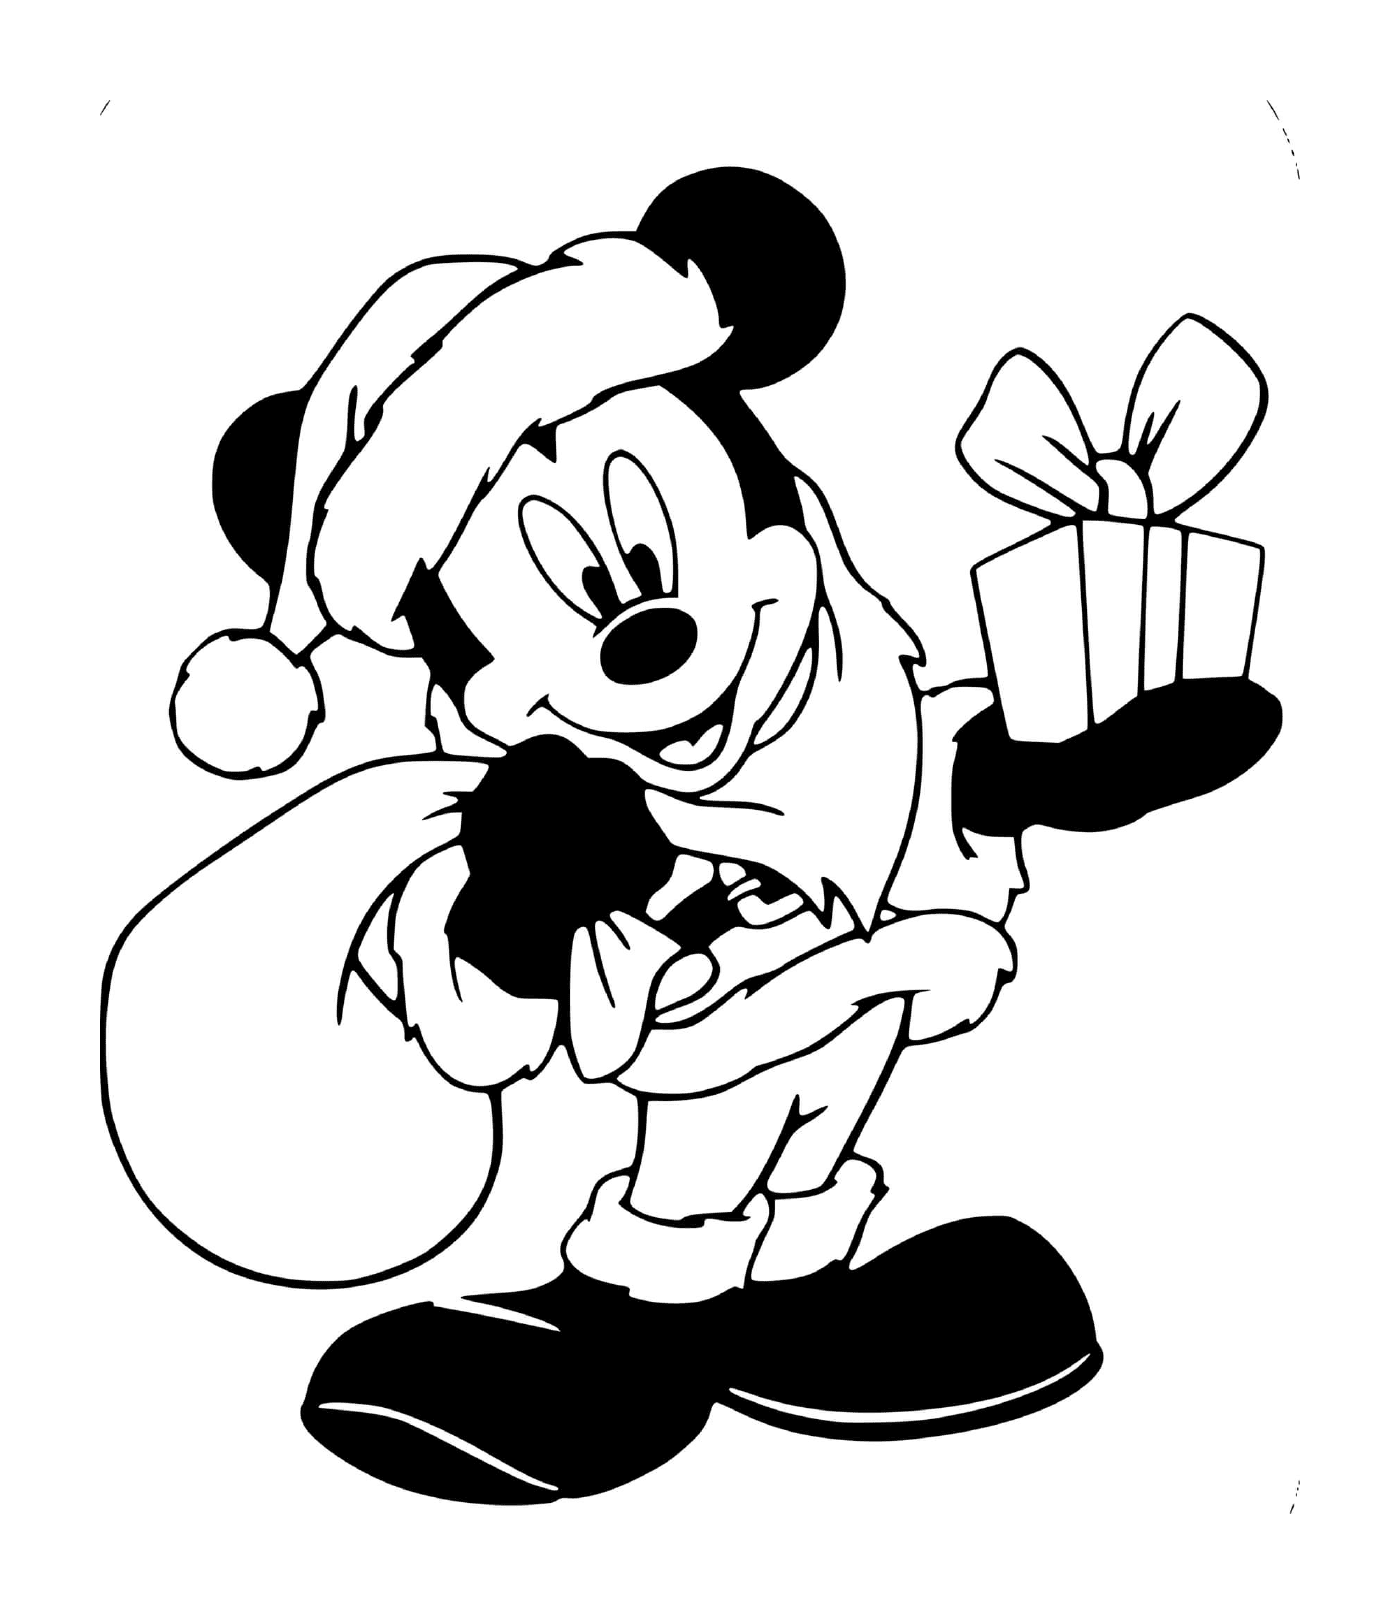  Mickey in Santa's costume 